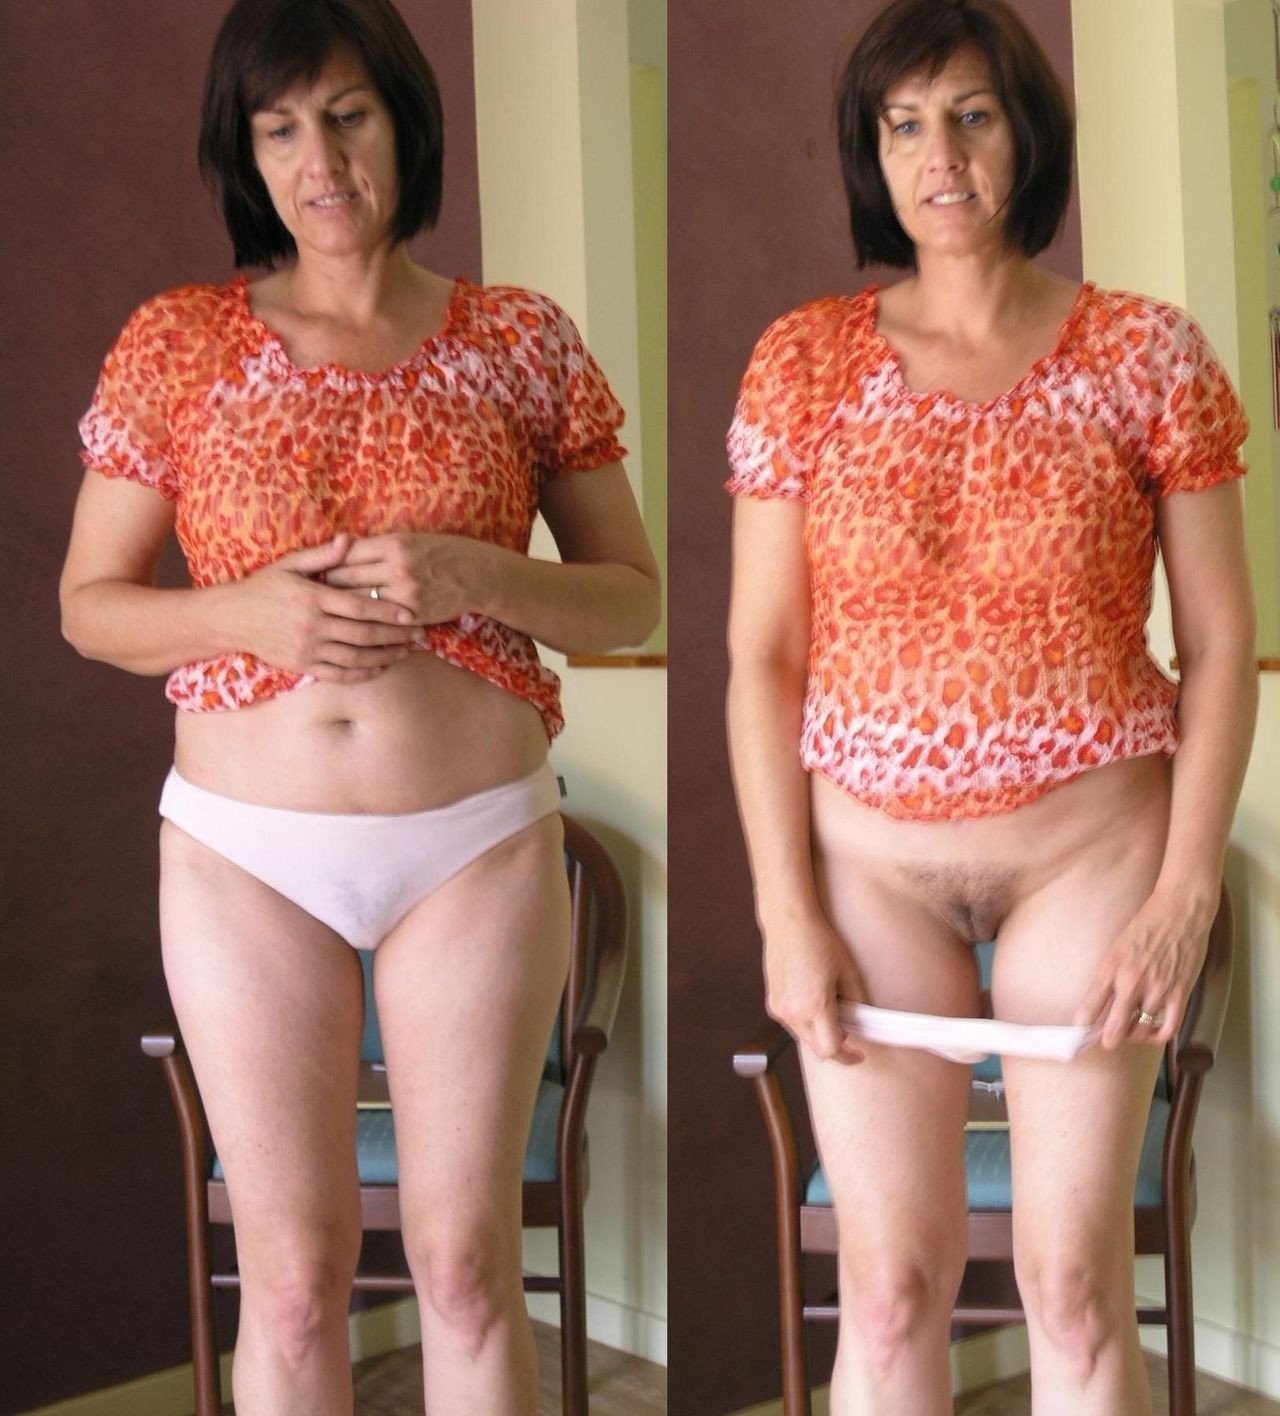 https://motherlesspics.com/uploads/posts/2023-03/1678710967_motherlesspics-com-p-porn-naked-women-undress-fat-take-off-thei-60.jpg